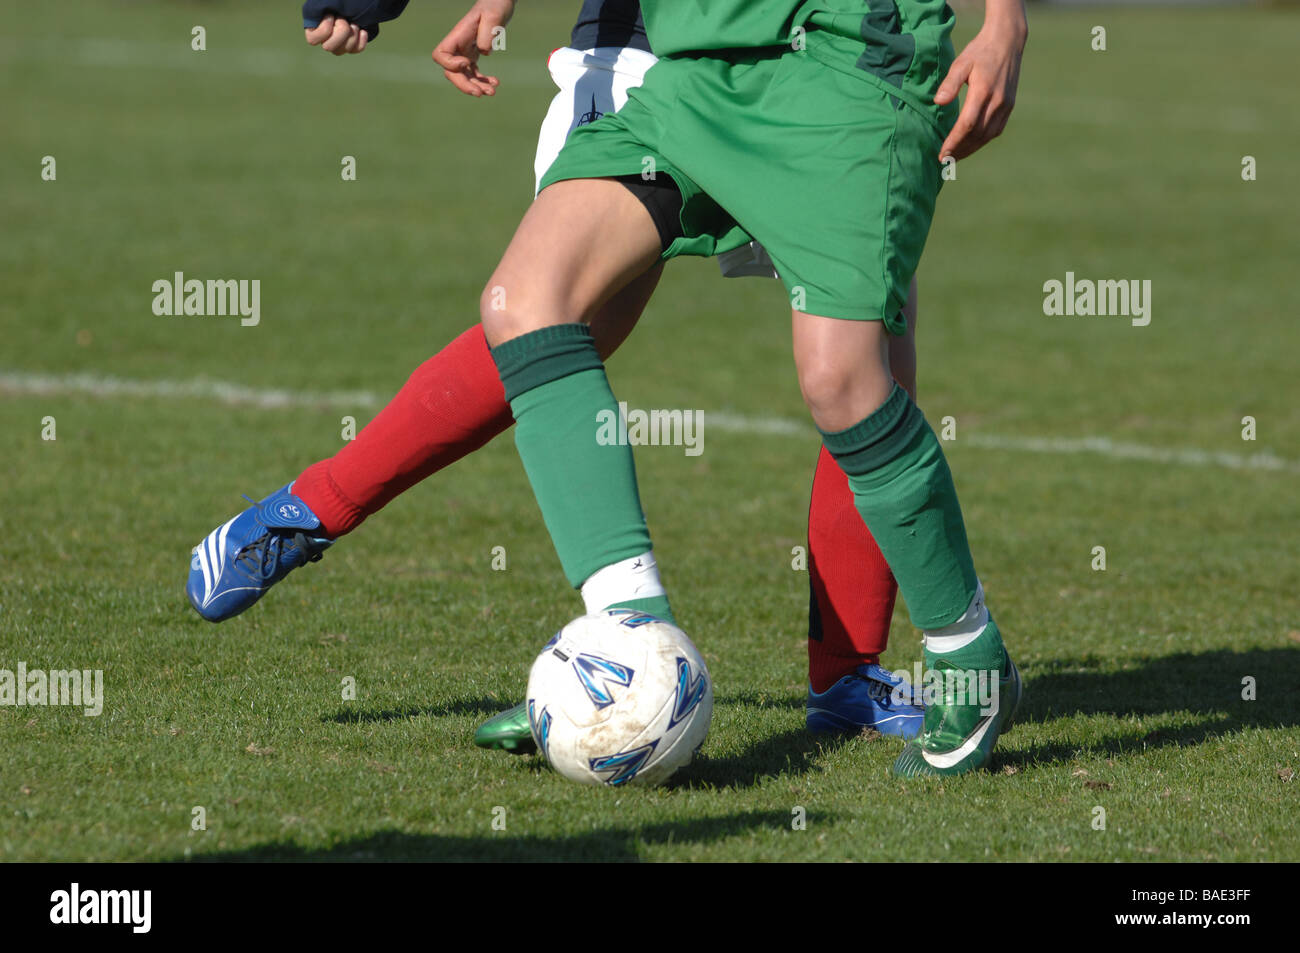 Detalle de los dos futbolistas, piernas y pies con el fútbol. Foto de stock